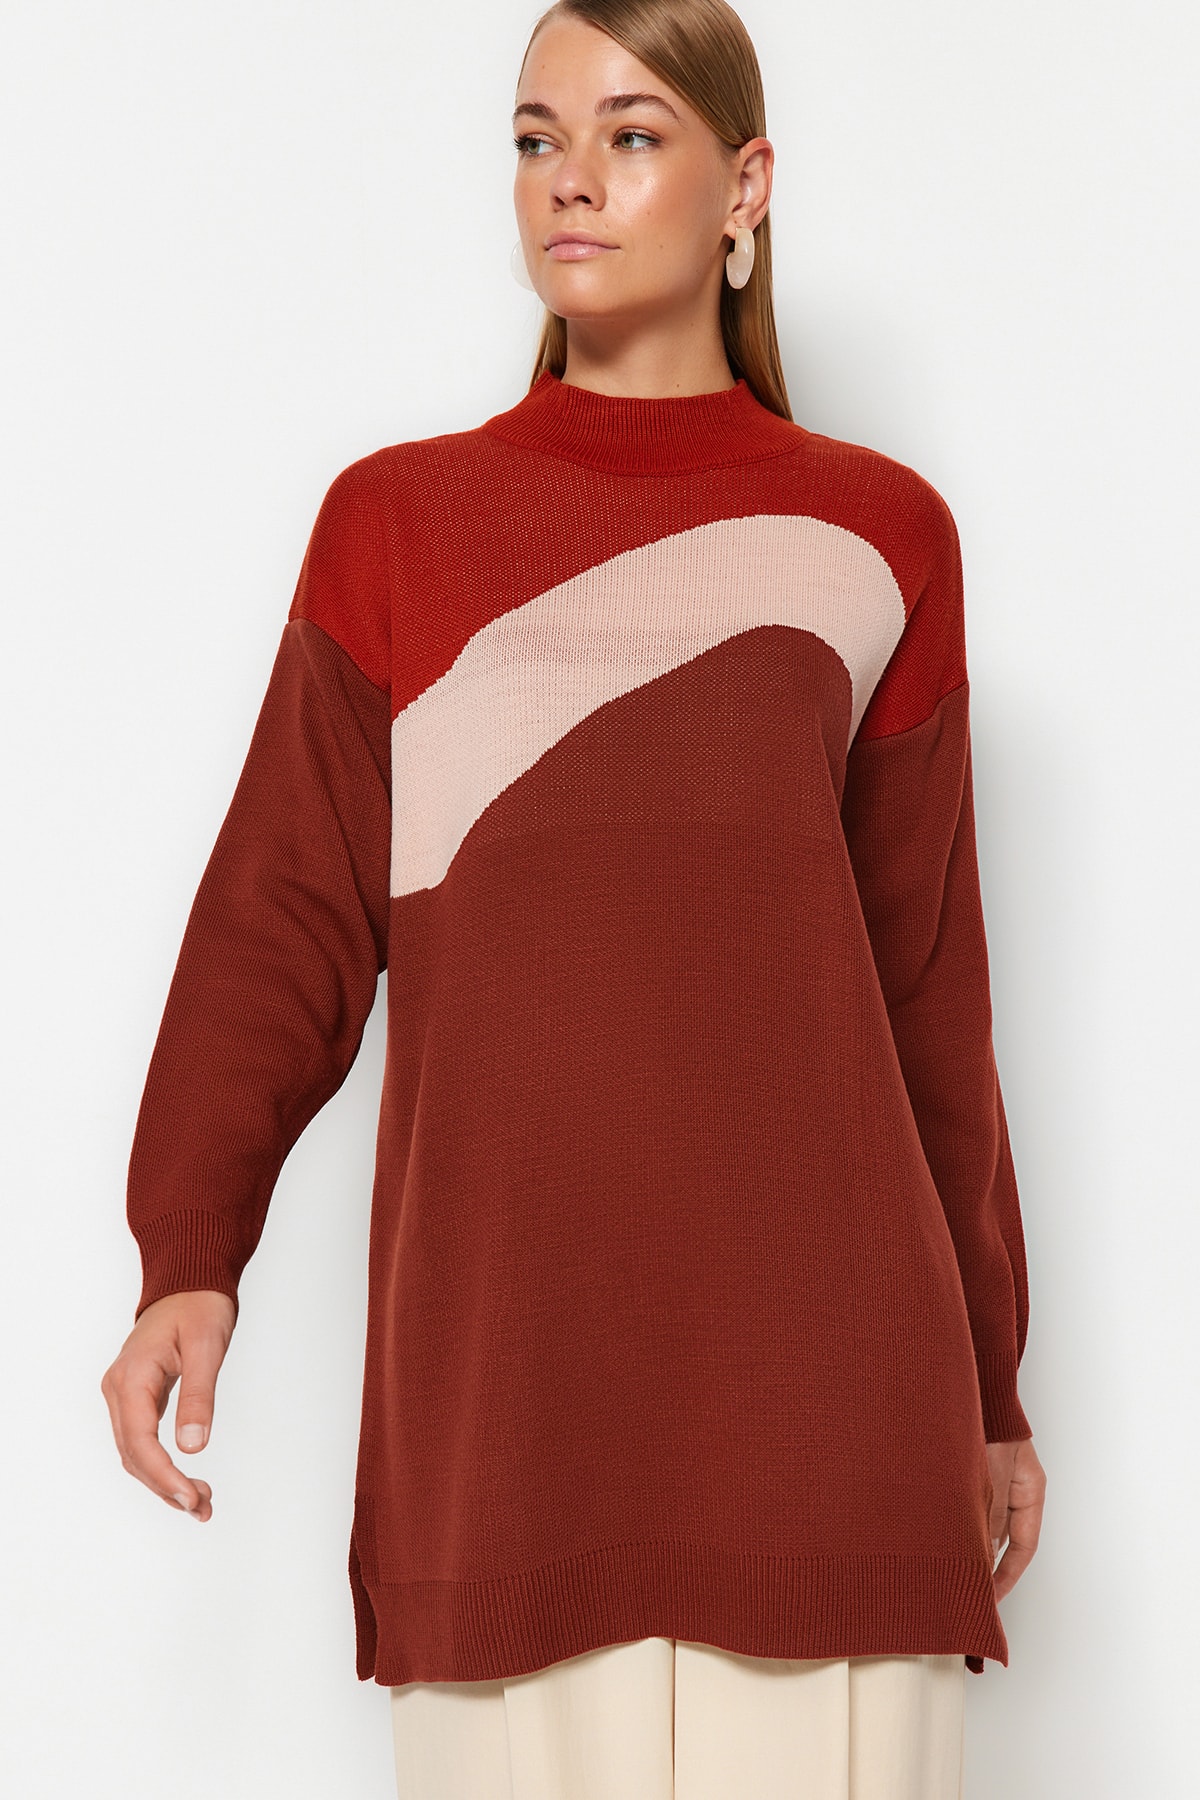 Трикотажный свитер светло-коричневого цвета с цветовыми блоками Trendyol Modest, коричневый